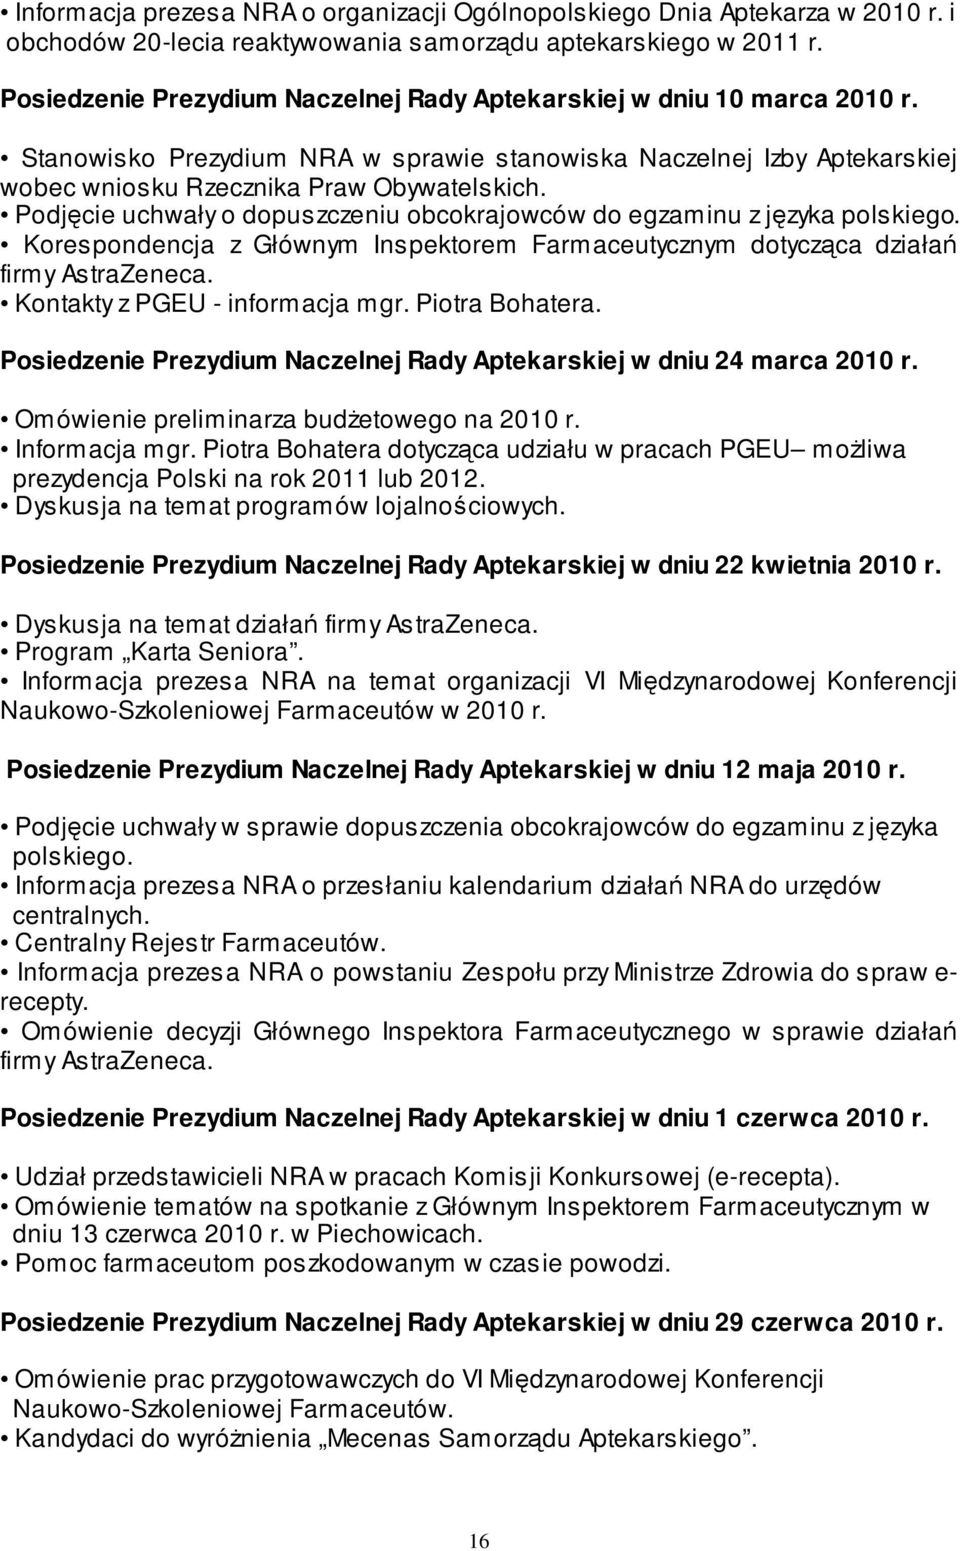 Podjęcie uchwały o dopuszczeniu obcokrajowców do egzaminu z języka polskiego. Korespondencja z Głównym Inspektorem Farmaceutycznym dotycząca działań firmy AstraZeneca.